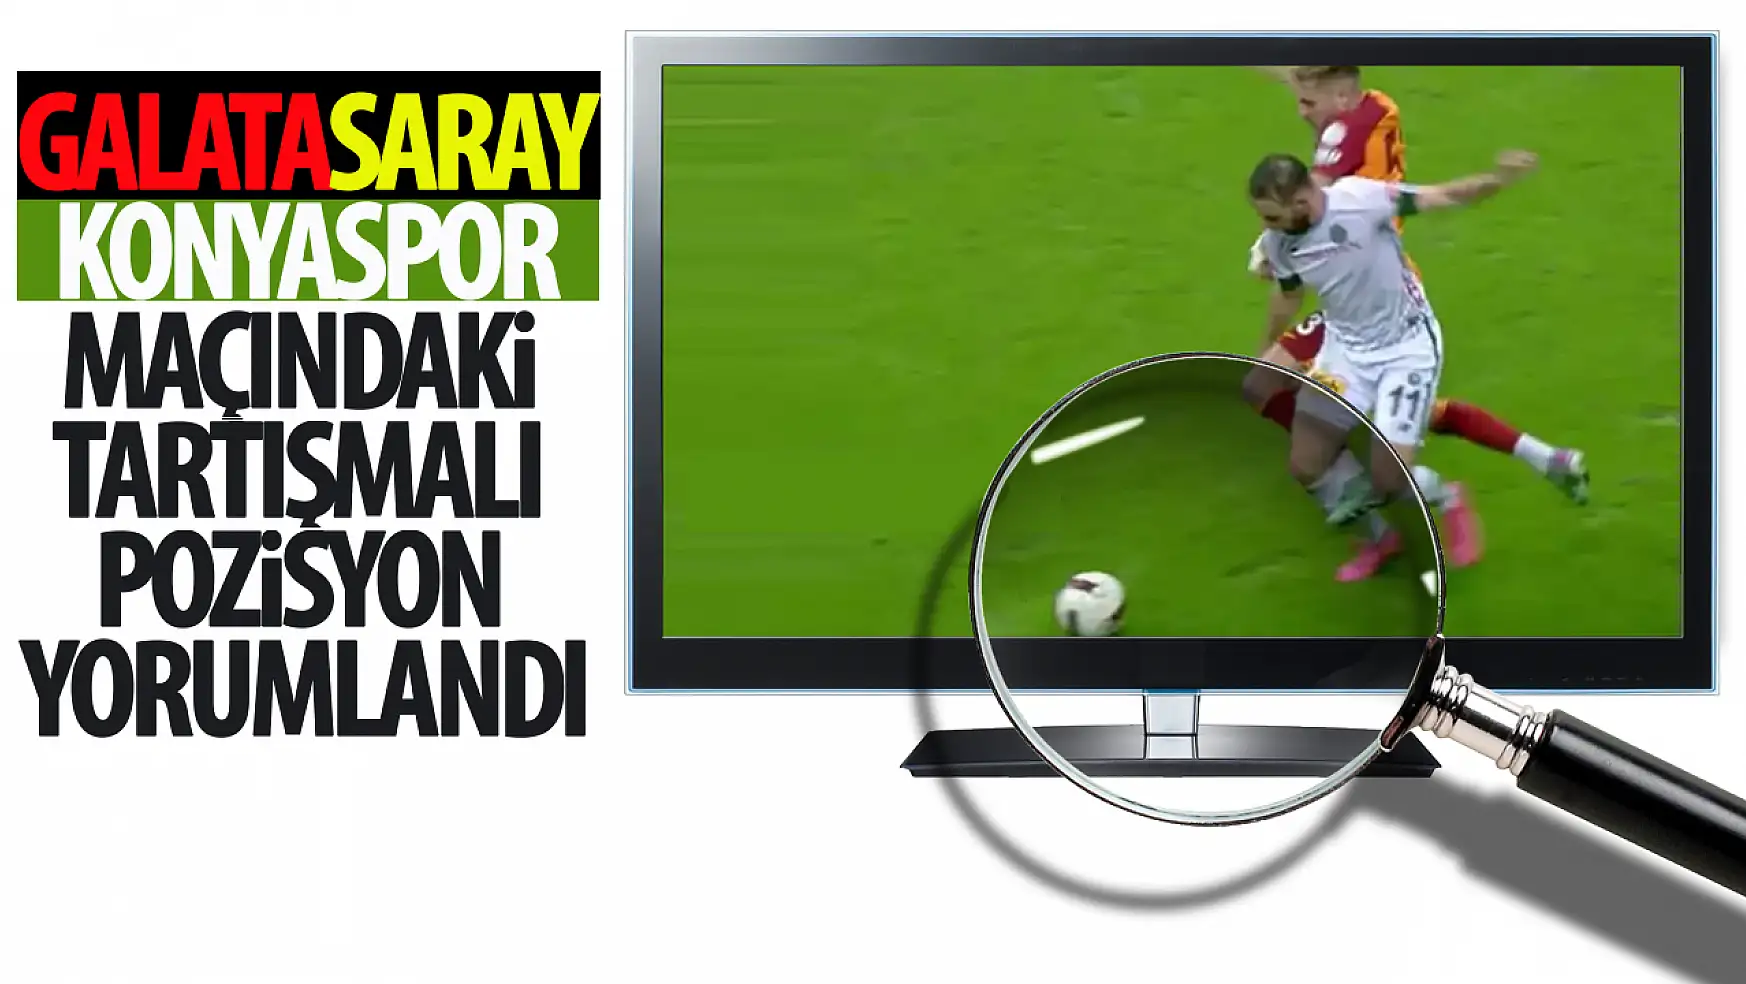 Galatasaray-Konyaspor maçındaki tartışmalı pozisyon yorumlandı!